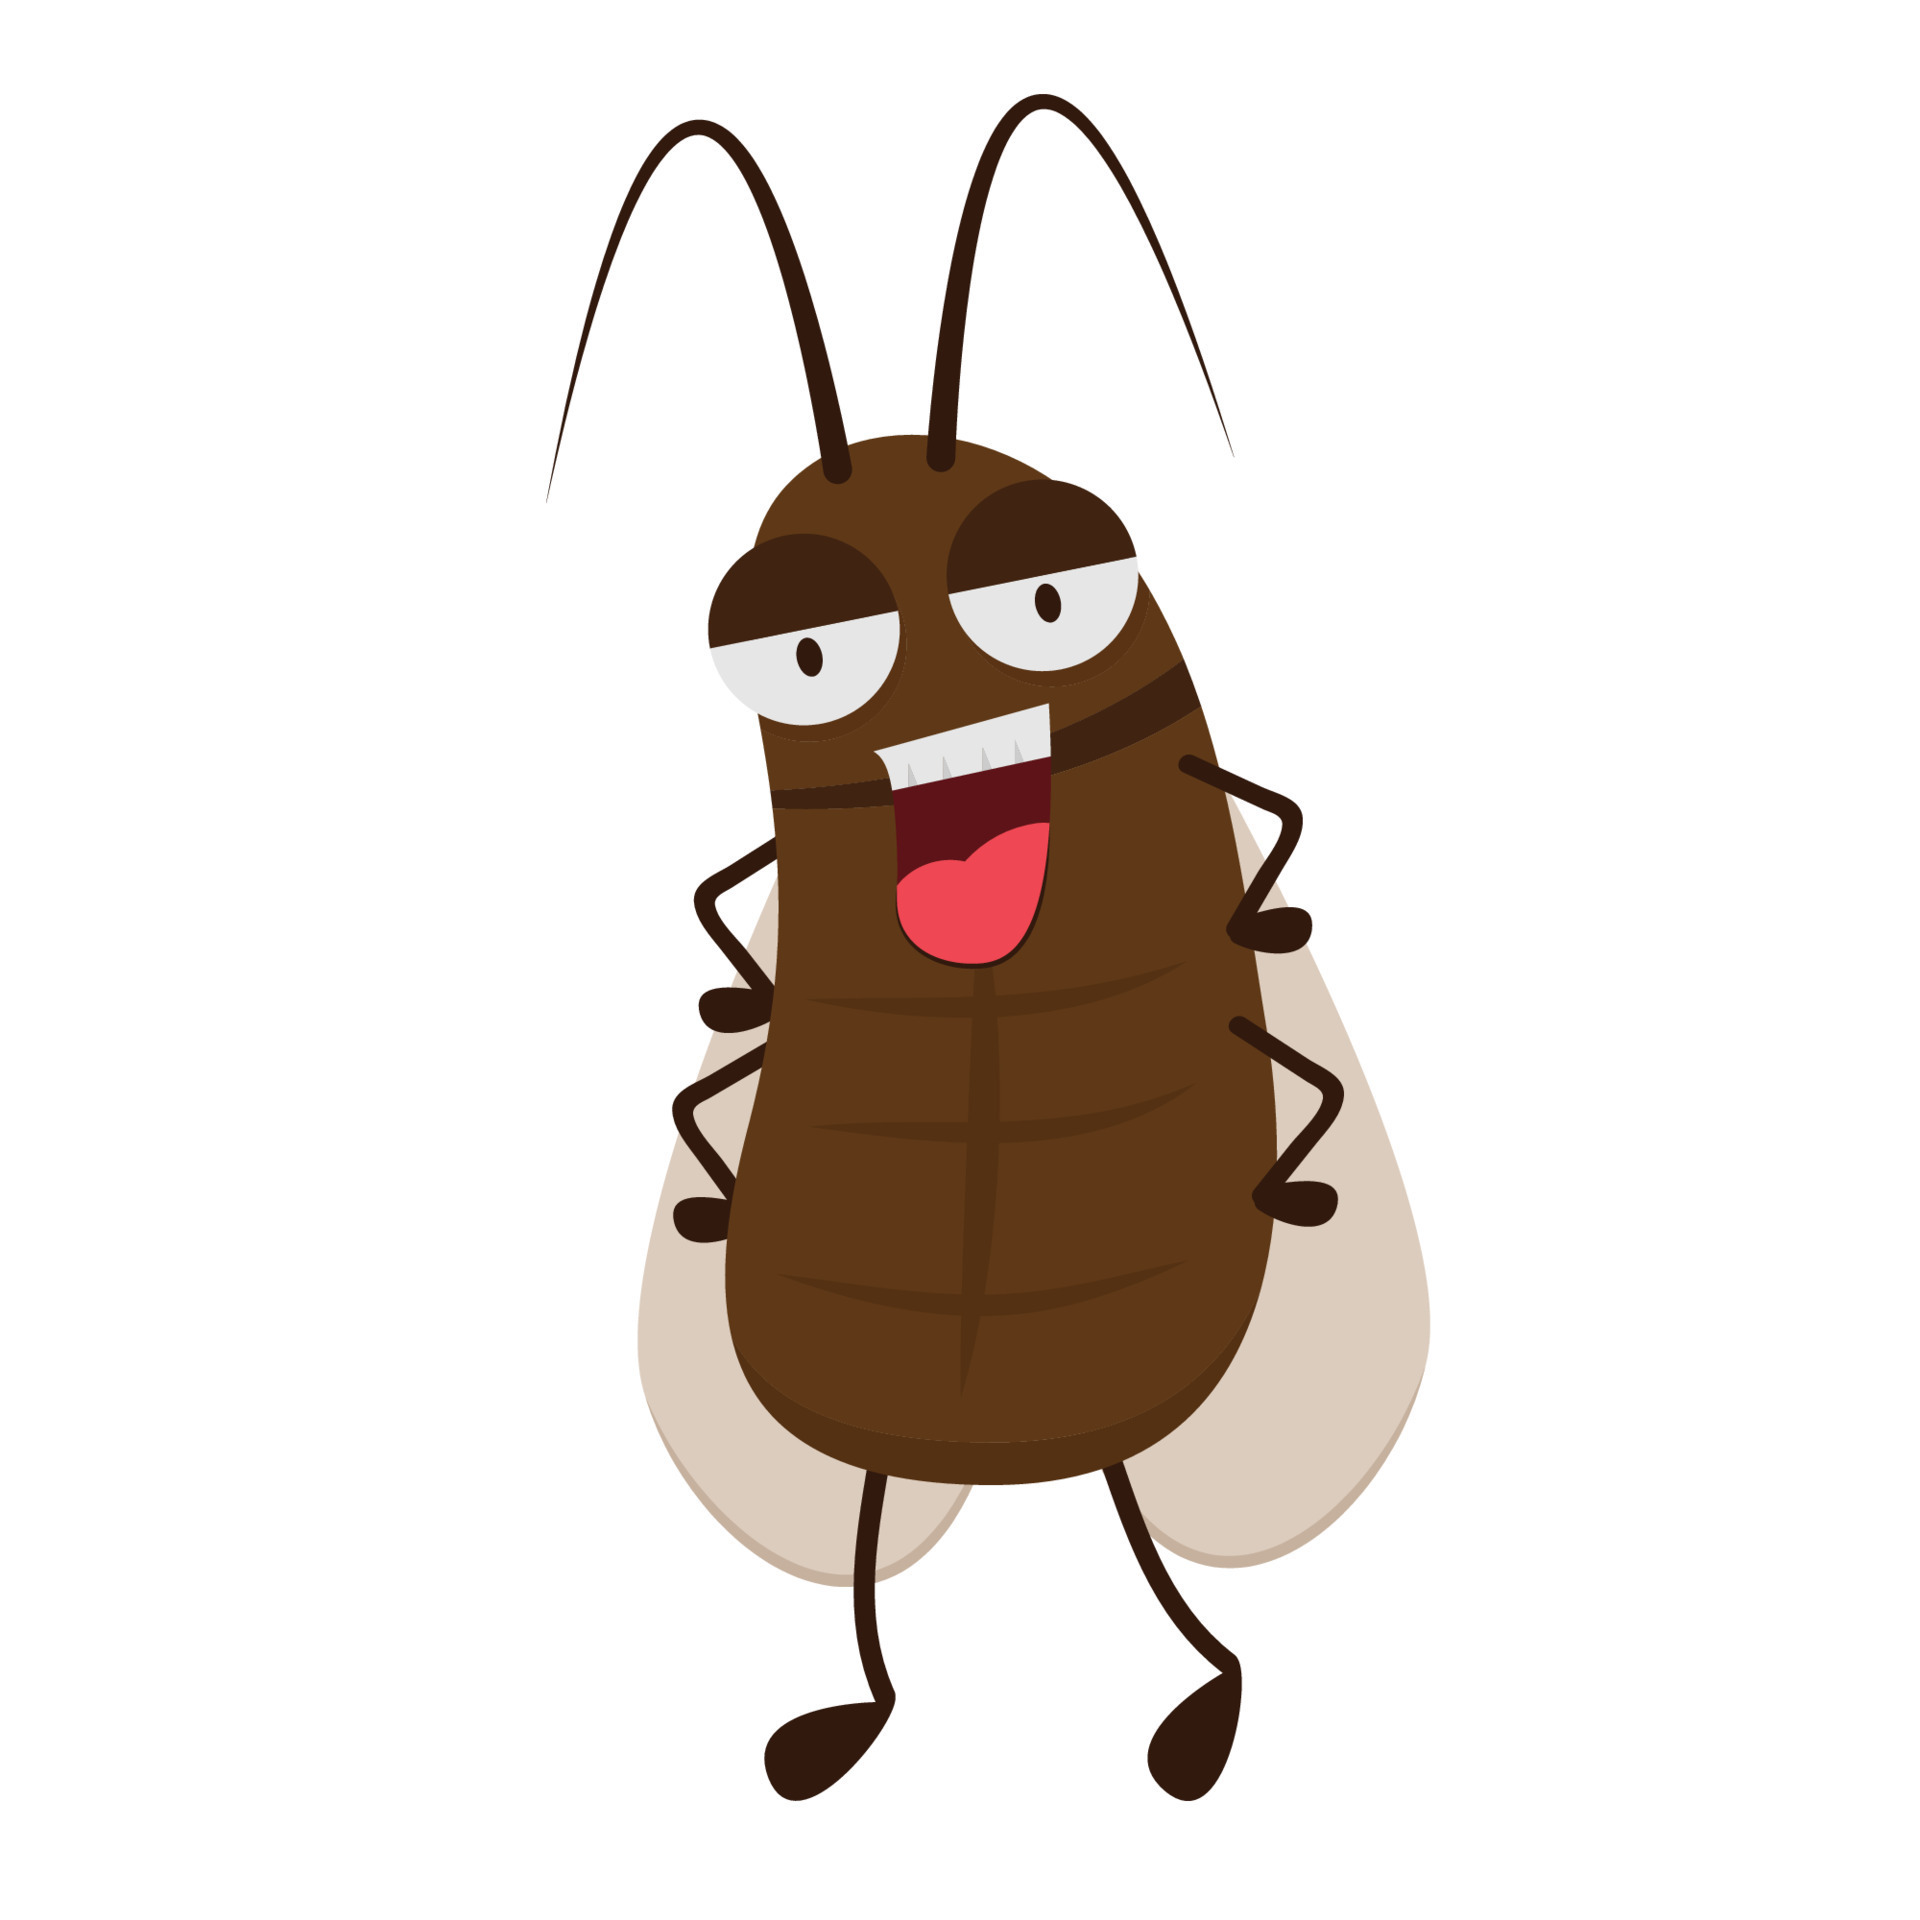 Cockroach cartoon vector. Cockroach character design. 15846074 Vector Art  at Vecteezy